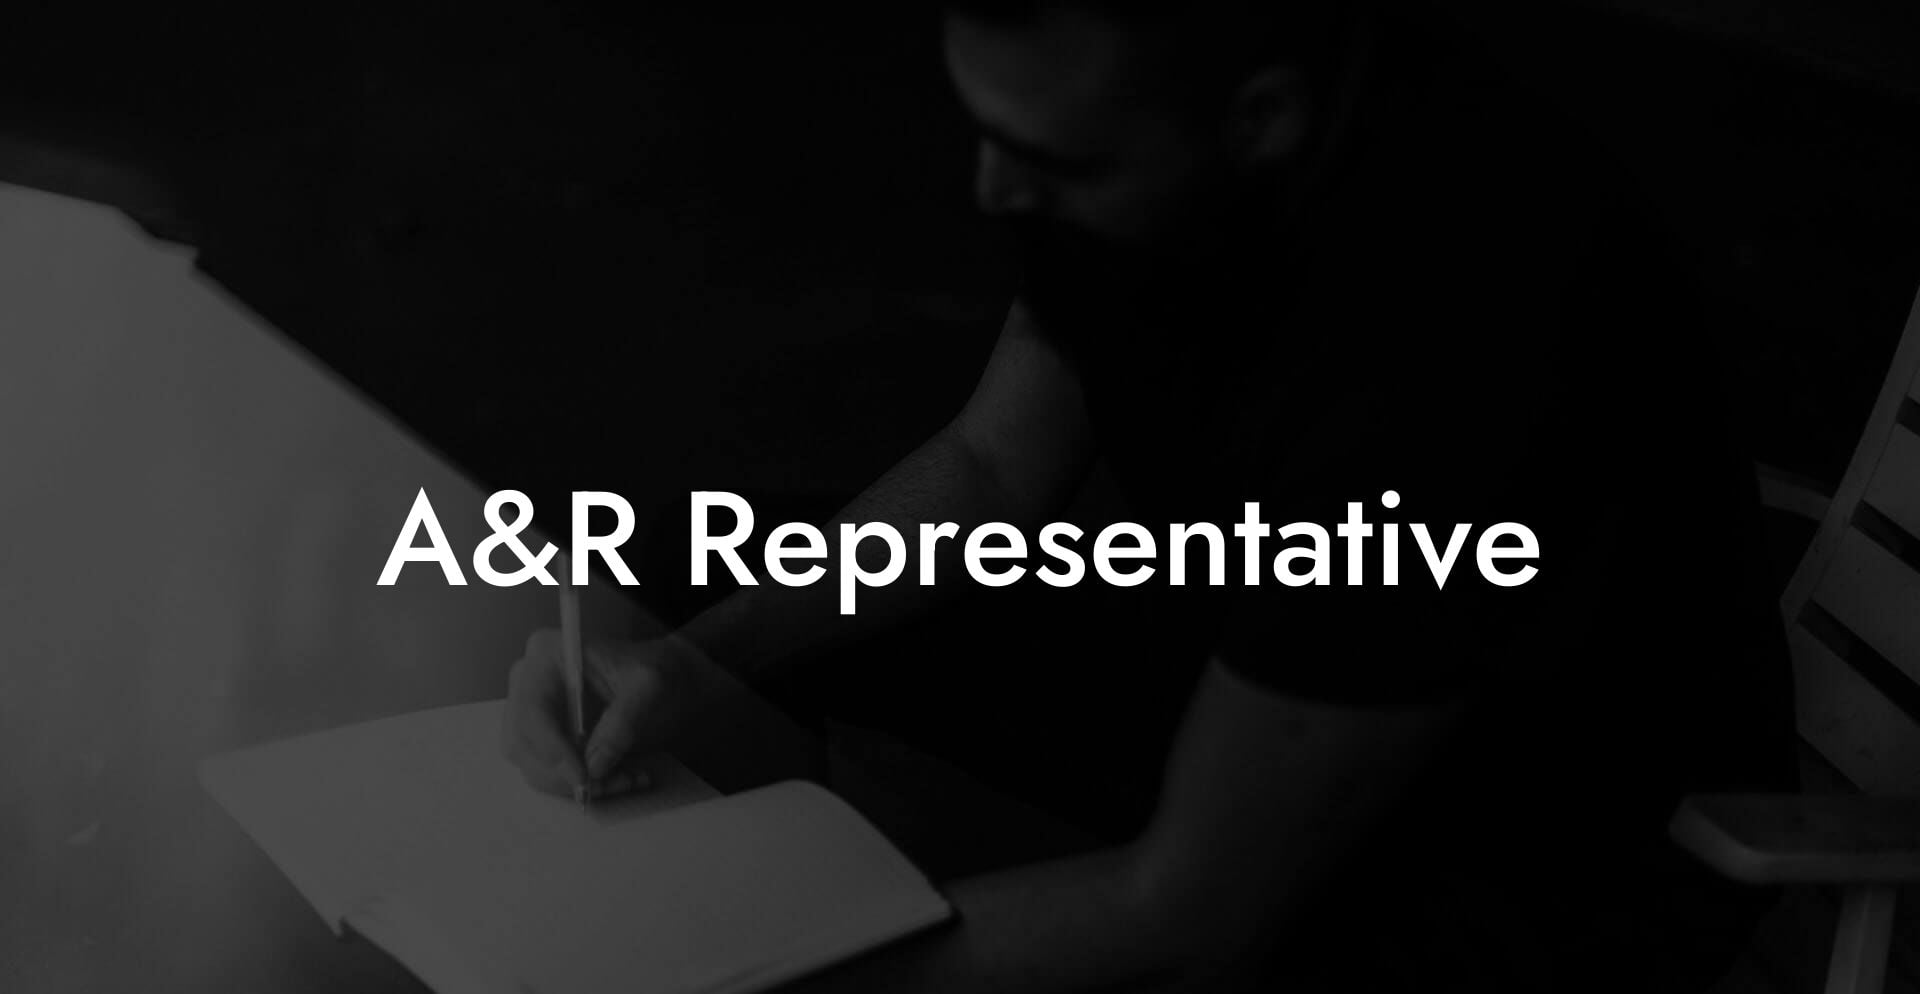 A&R Representative